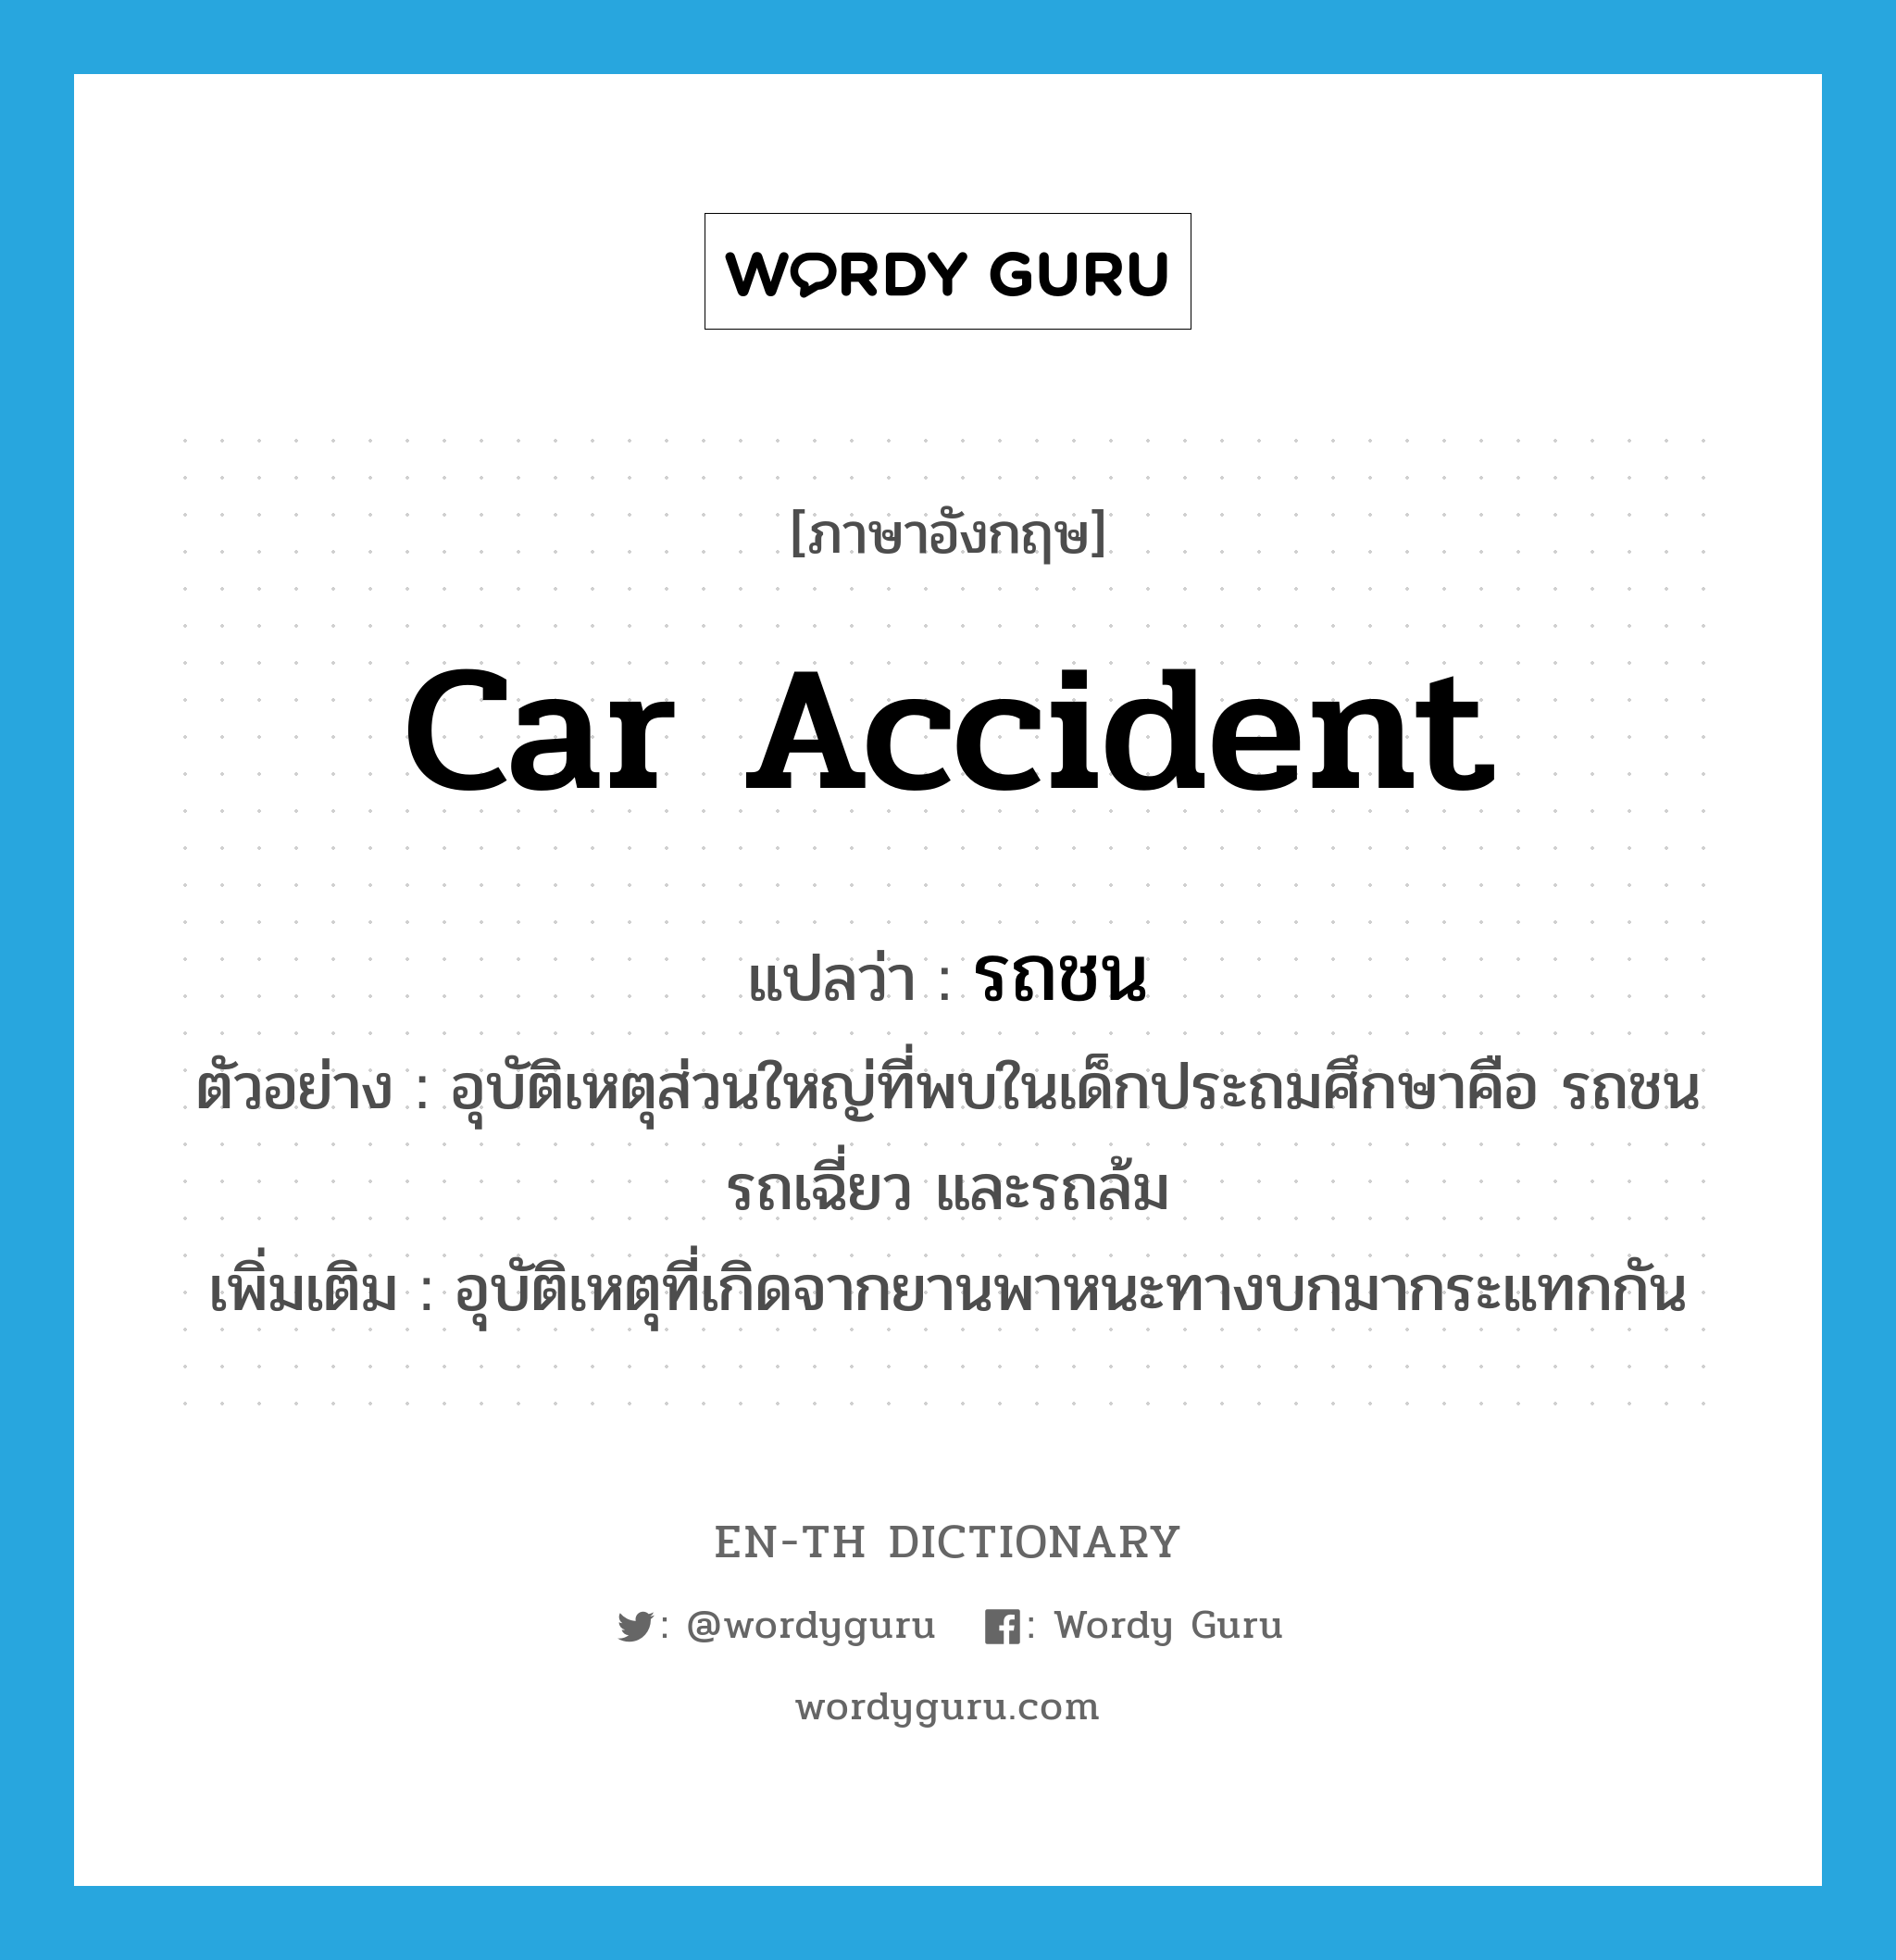 car accident แปลว่า?, คำศัพท์ภาษาอังกฤษ car accident แปลว่า รถชน ประเภท N ตัวอย่าง อุบัติเหตุส่วนใหญ่ที่พบในเด็กประถมศึกษาคือ รถชน รถเฉี่ยว และรถล้ม เพิ่มเติม อุบัติเหตุที่เกิดจากยานพาหนะทางบกมากระแทกกัน หมวด N